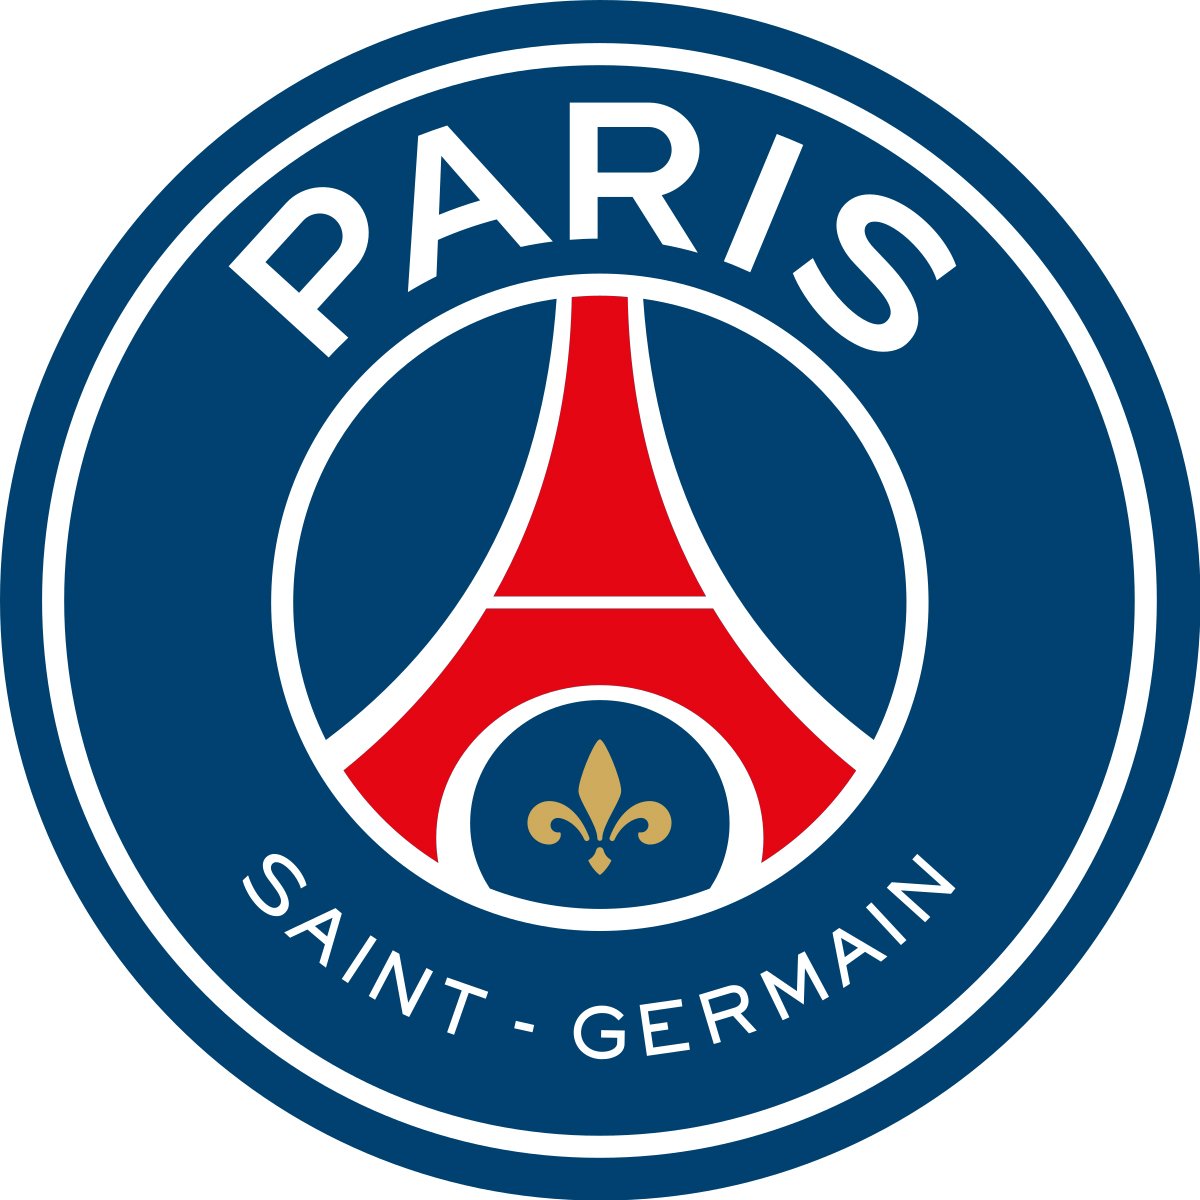 Paris Saint-Germain F.C. Color Codes Hex, RGB, and CMYK - Team Color Codes